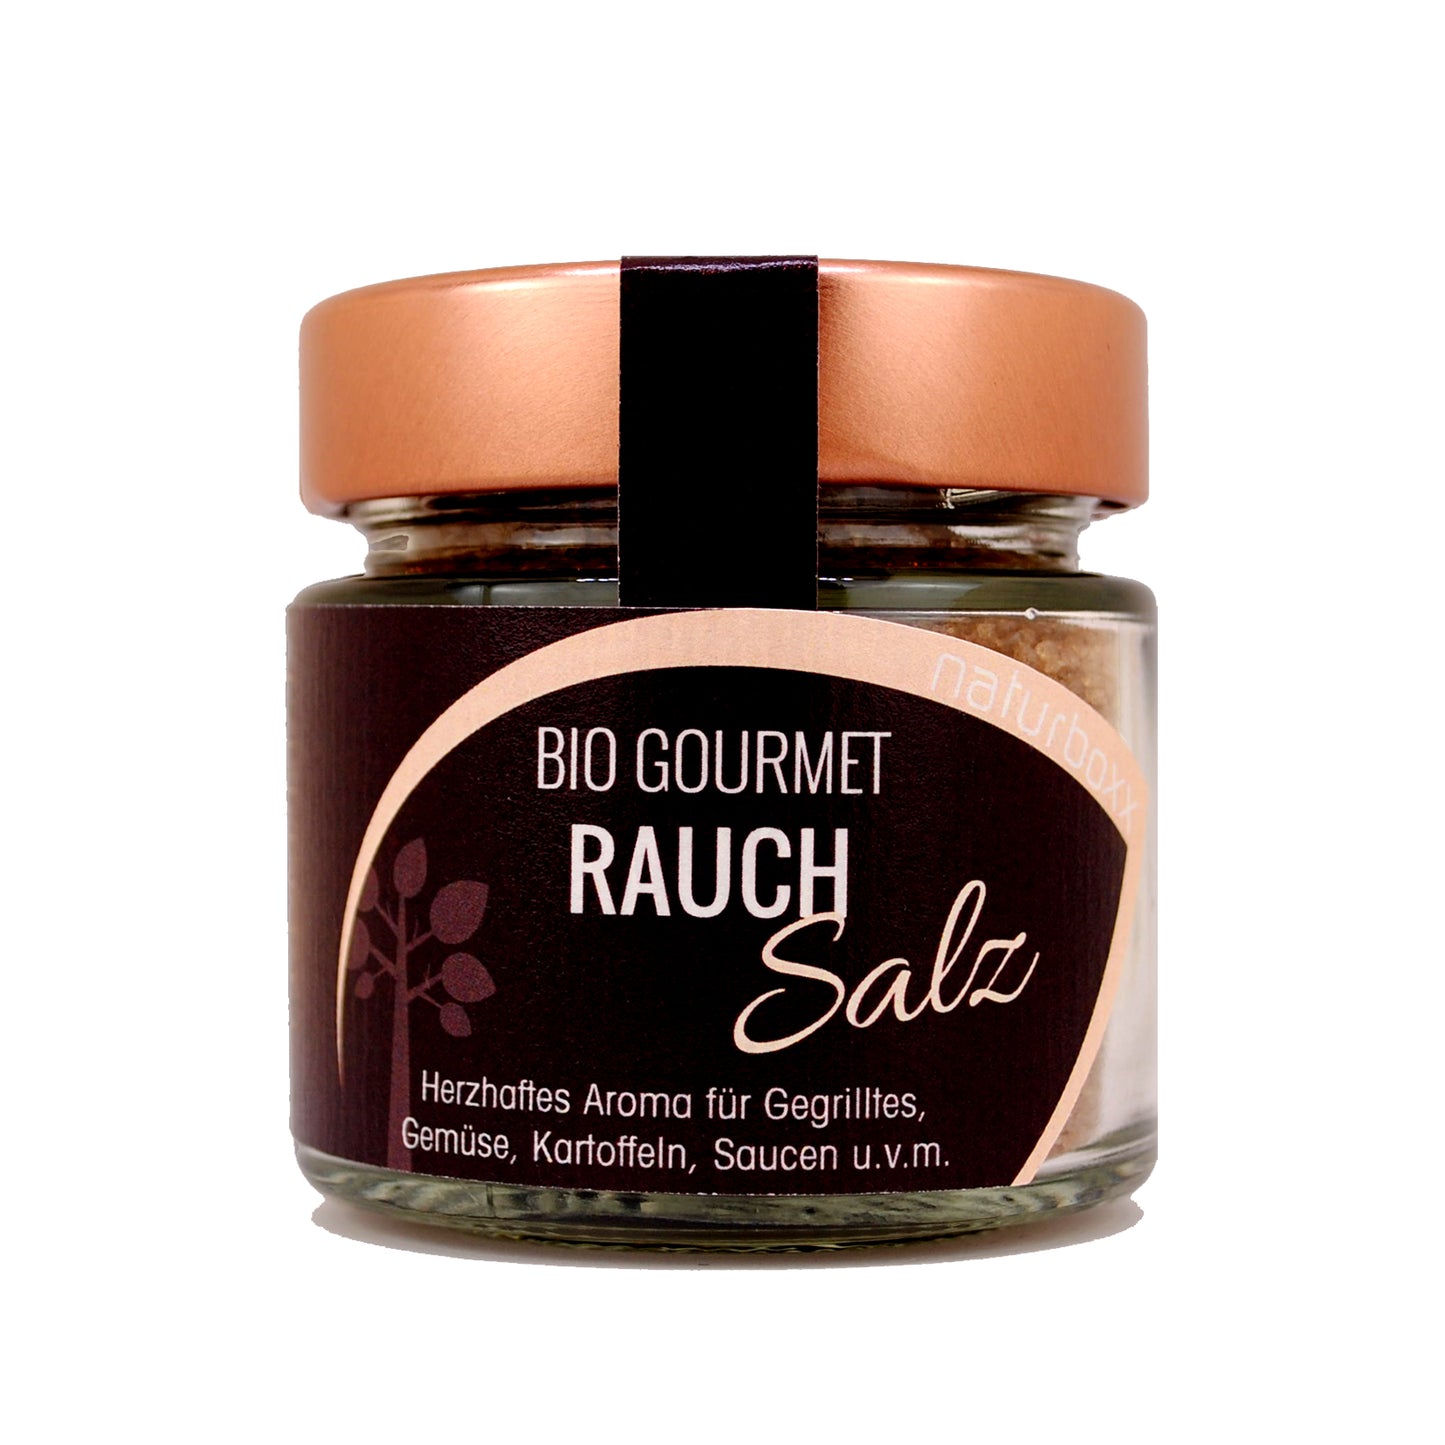 Bio Gourmetsalz RAUCH - Schraubglas